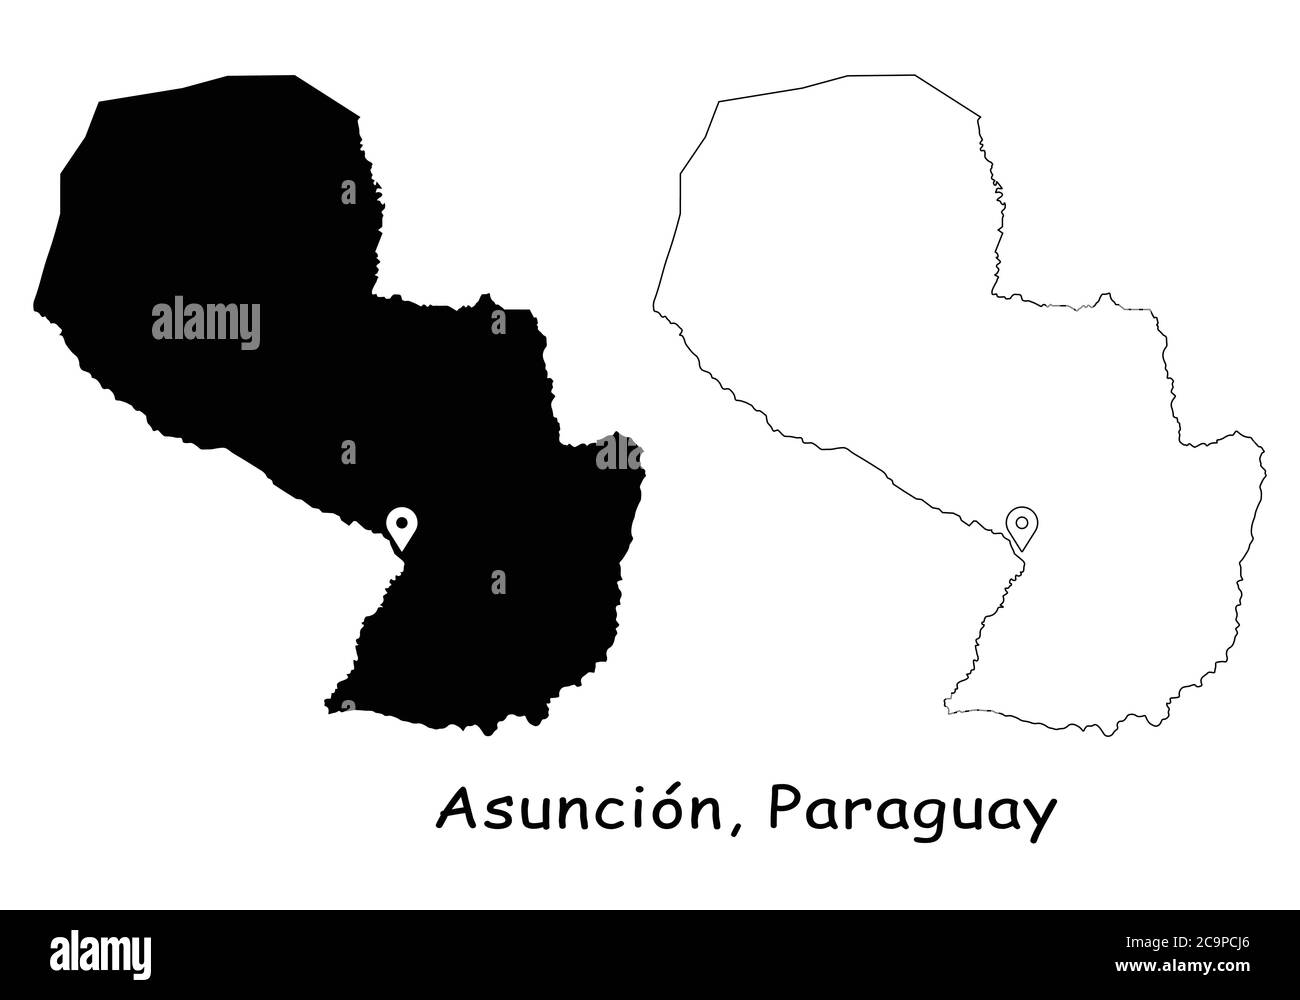 Vector De Mapa De Paraguay Imágenes Recortadas De Stock Alamy 4811